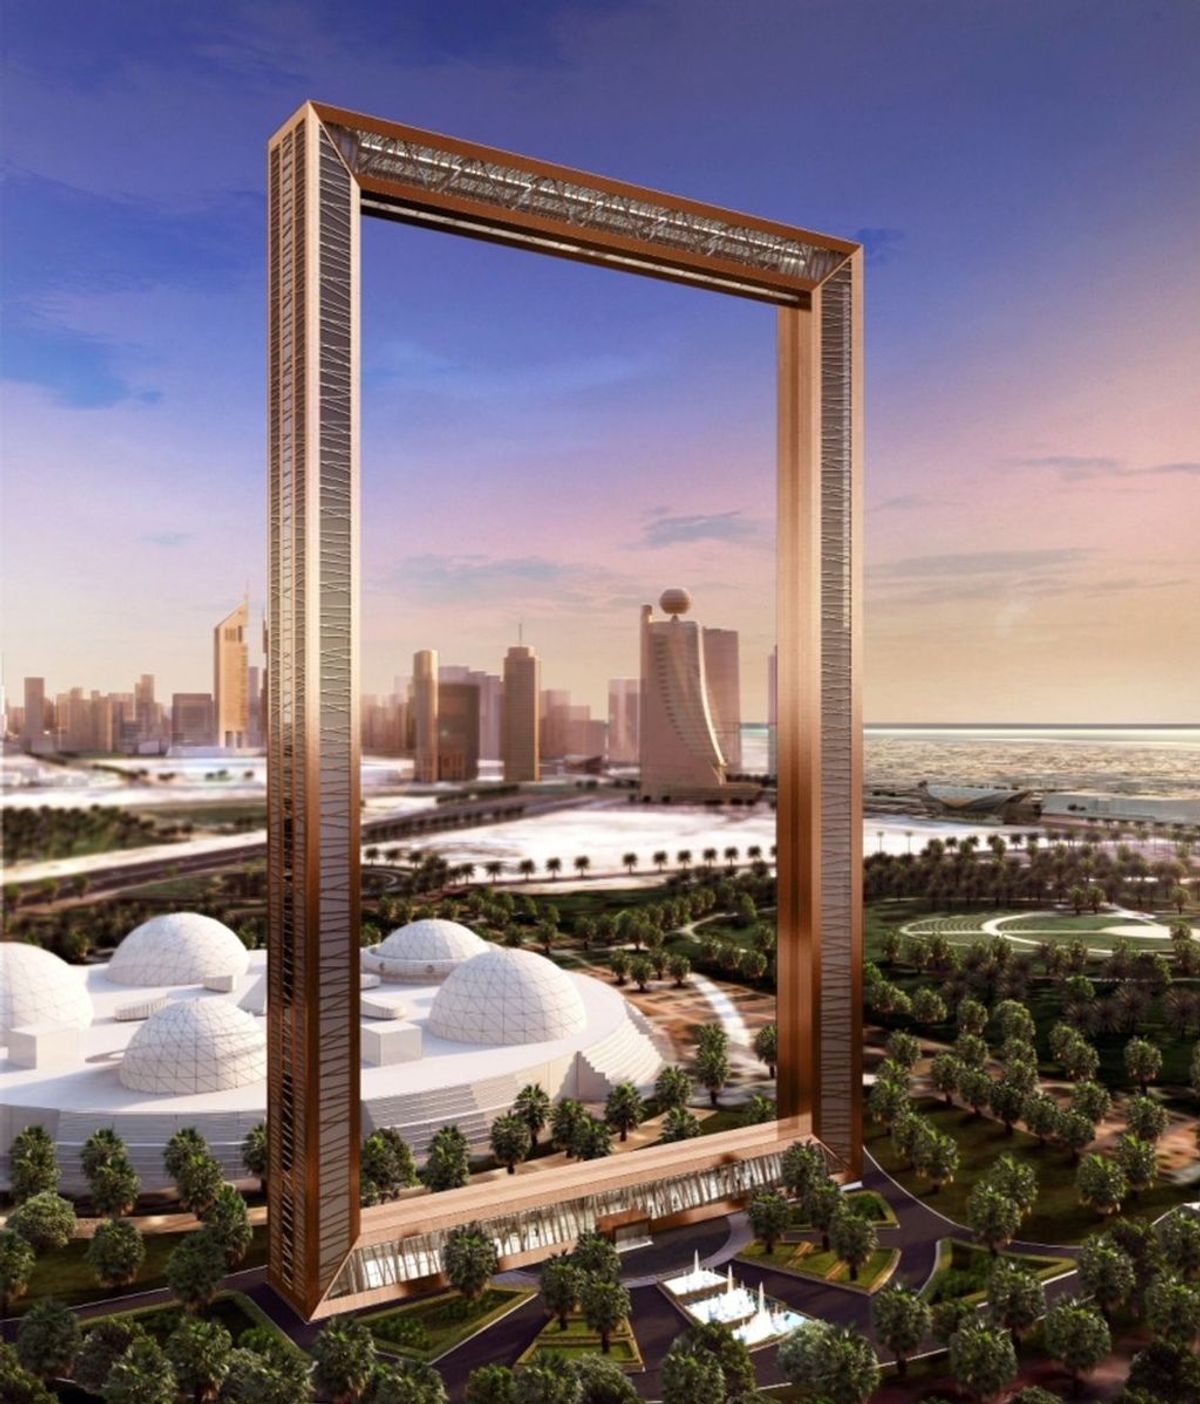 Dubái, a punto de inaugurar un rascacielos que 'enmarcará' la ciudad